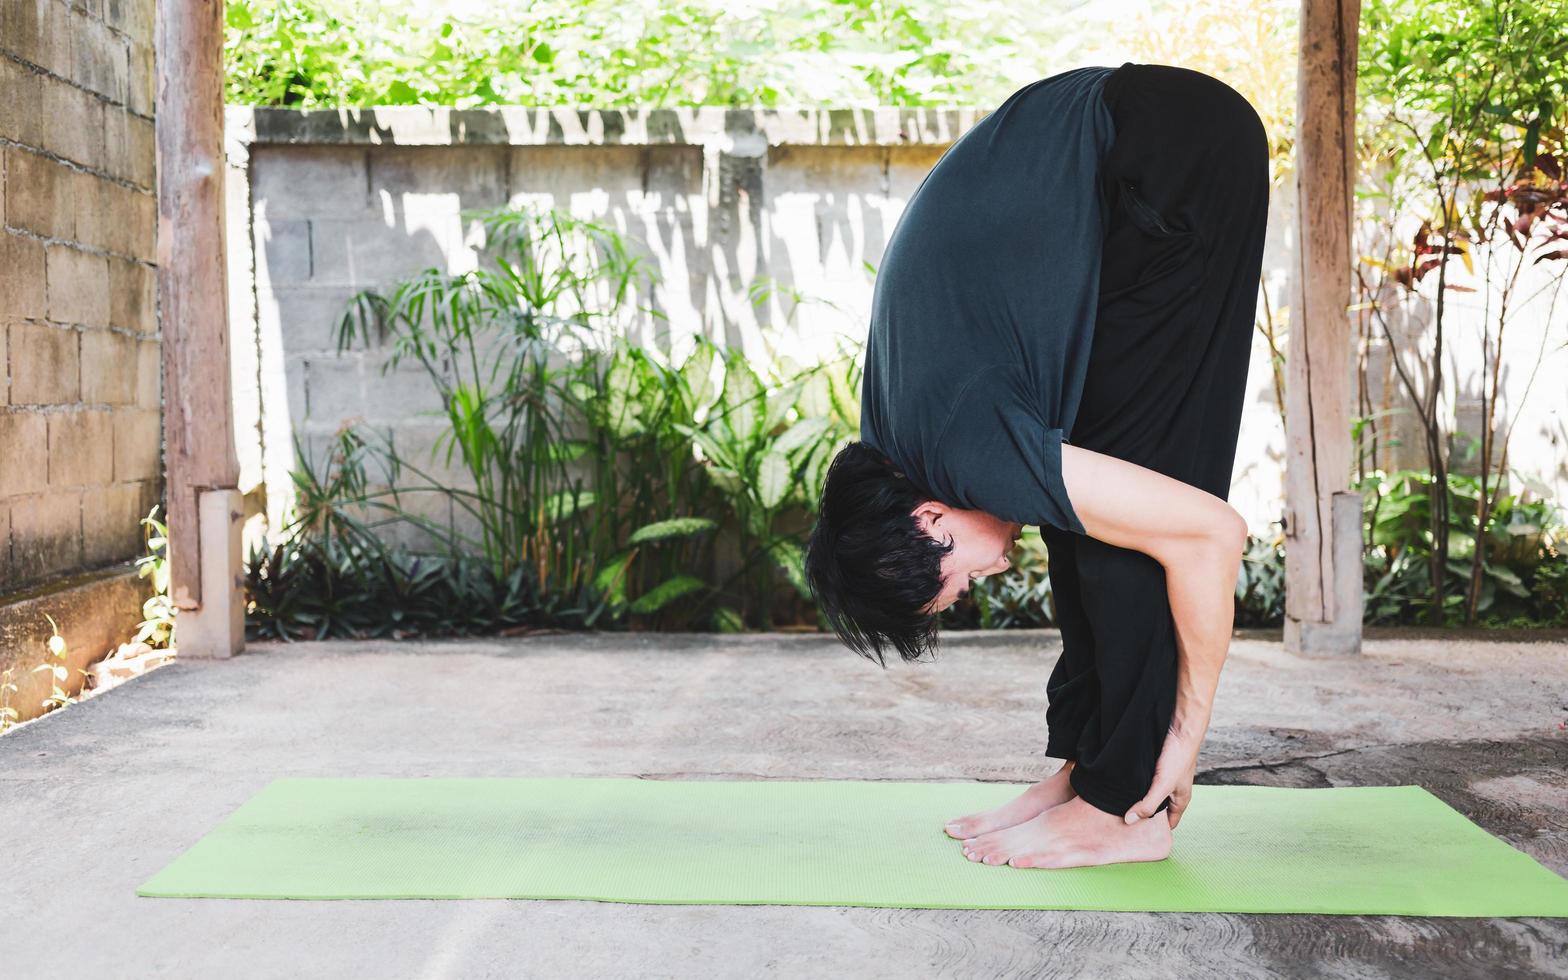 conceito de vida saudável de jovem asiático praticando ioga asana uttanasana - pose de dobra para a frente, malhando, poses em um tapete de ioga verde. exercício ao ar livre no jardim. estilo de vida saudável foto